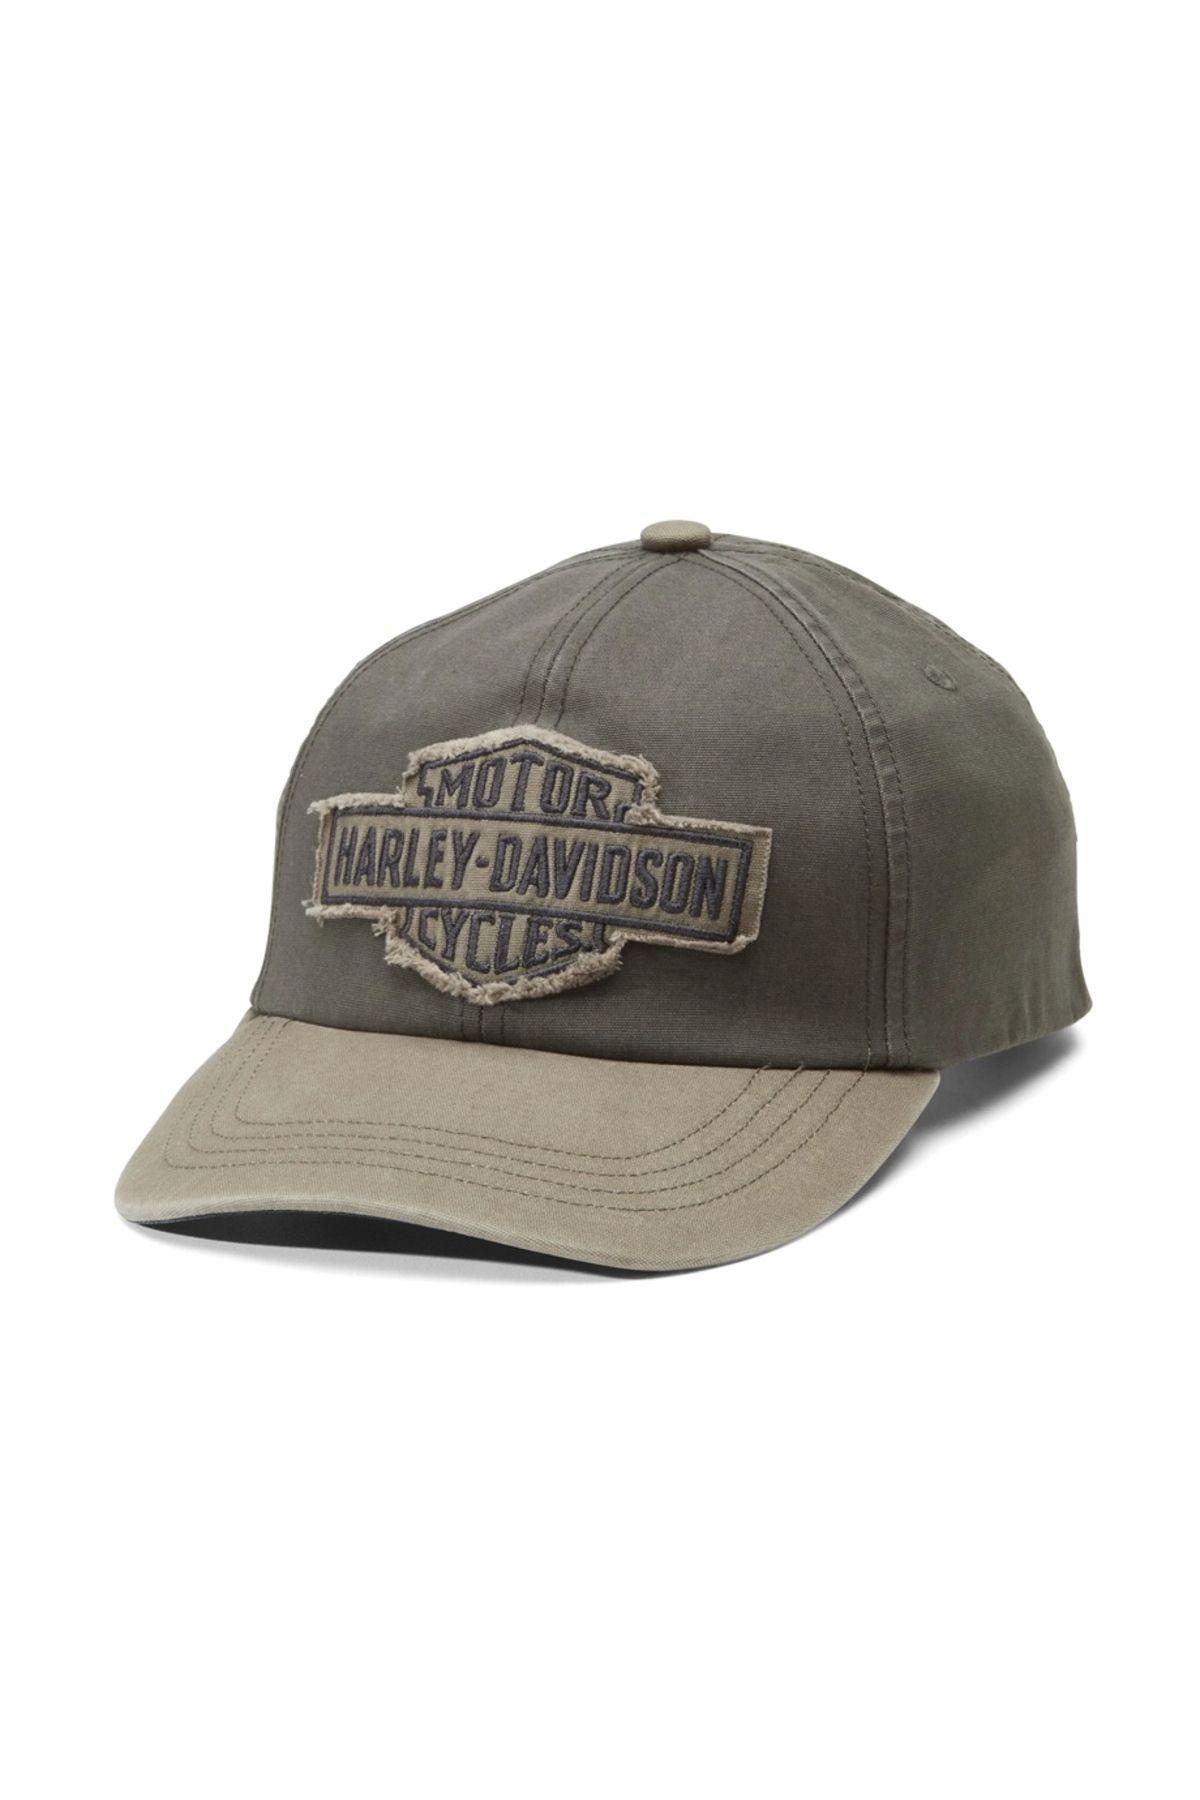 Harley Davidson Harley-davidson Men's Bar & Shield Apprentice Cap - Peat